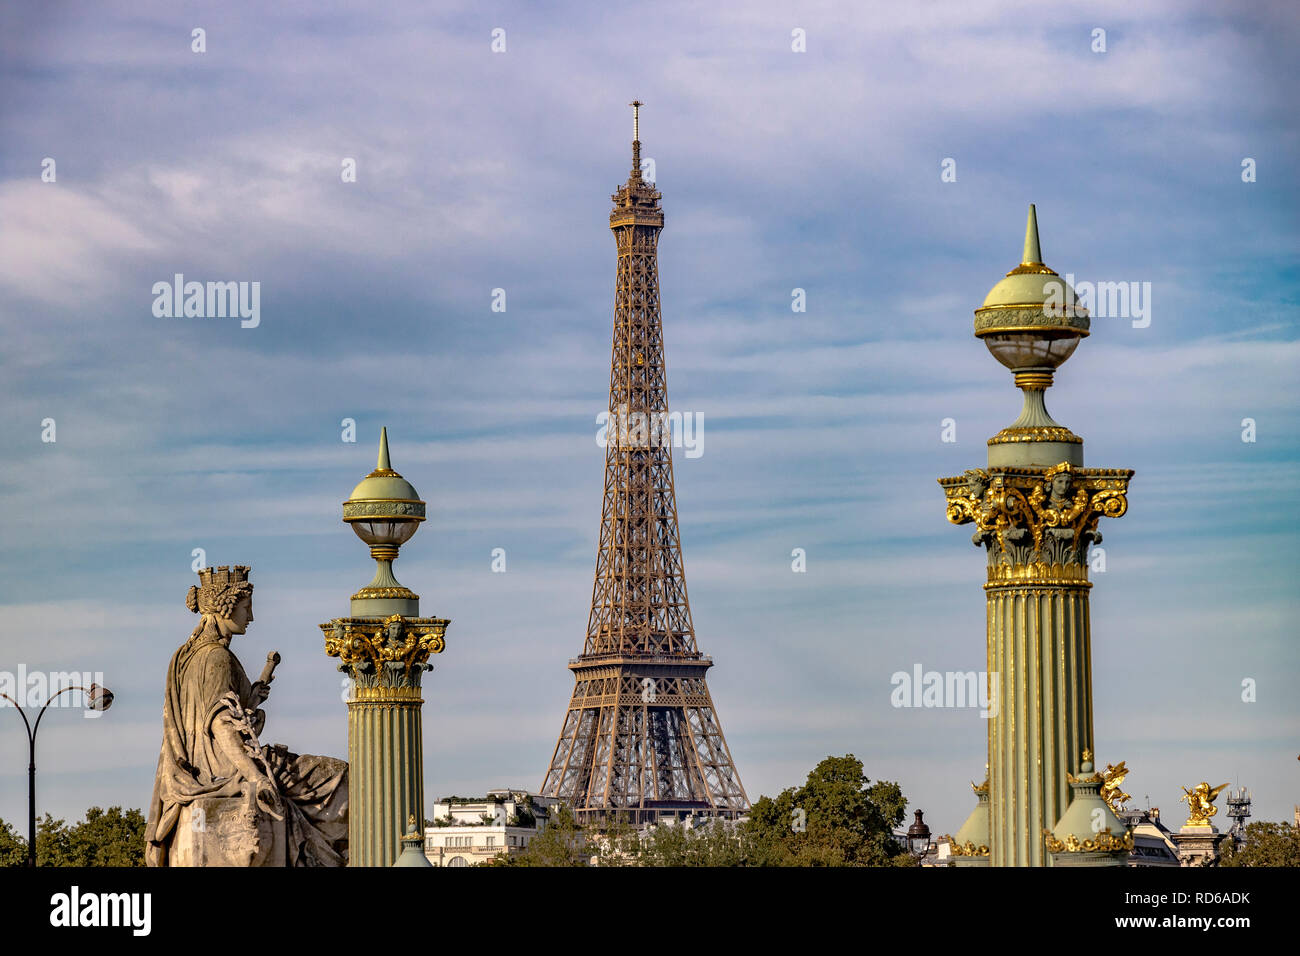 La Tour Eiffel encadrée par les lampadaires de la Place de la Concorde, Paris, France Banque D'Images